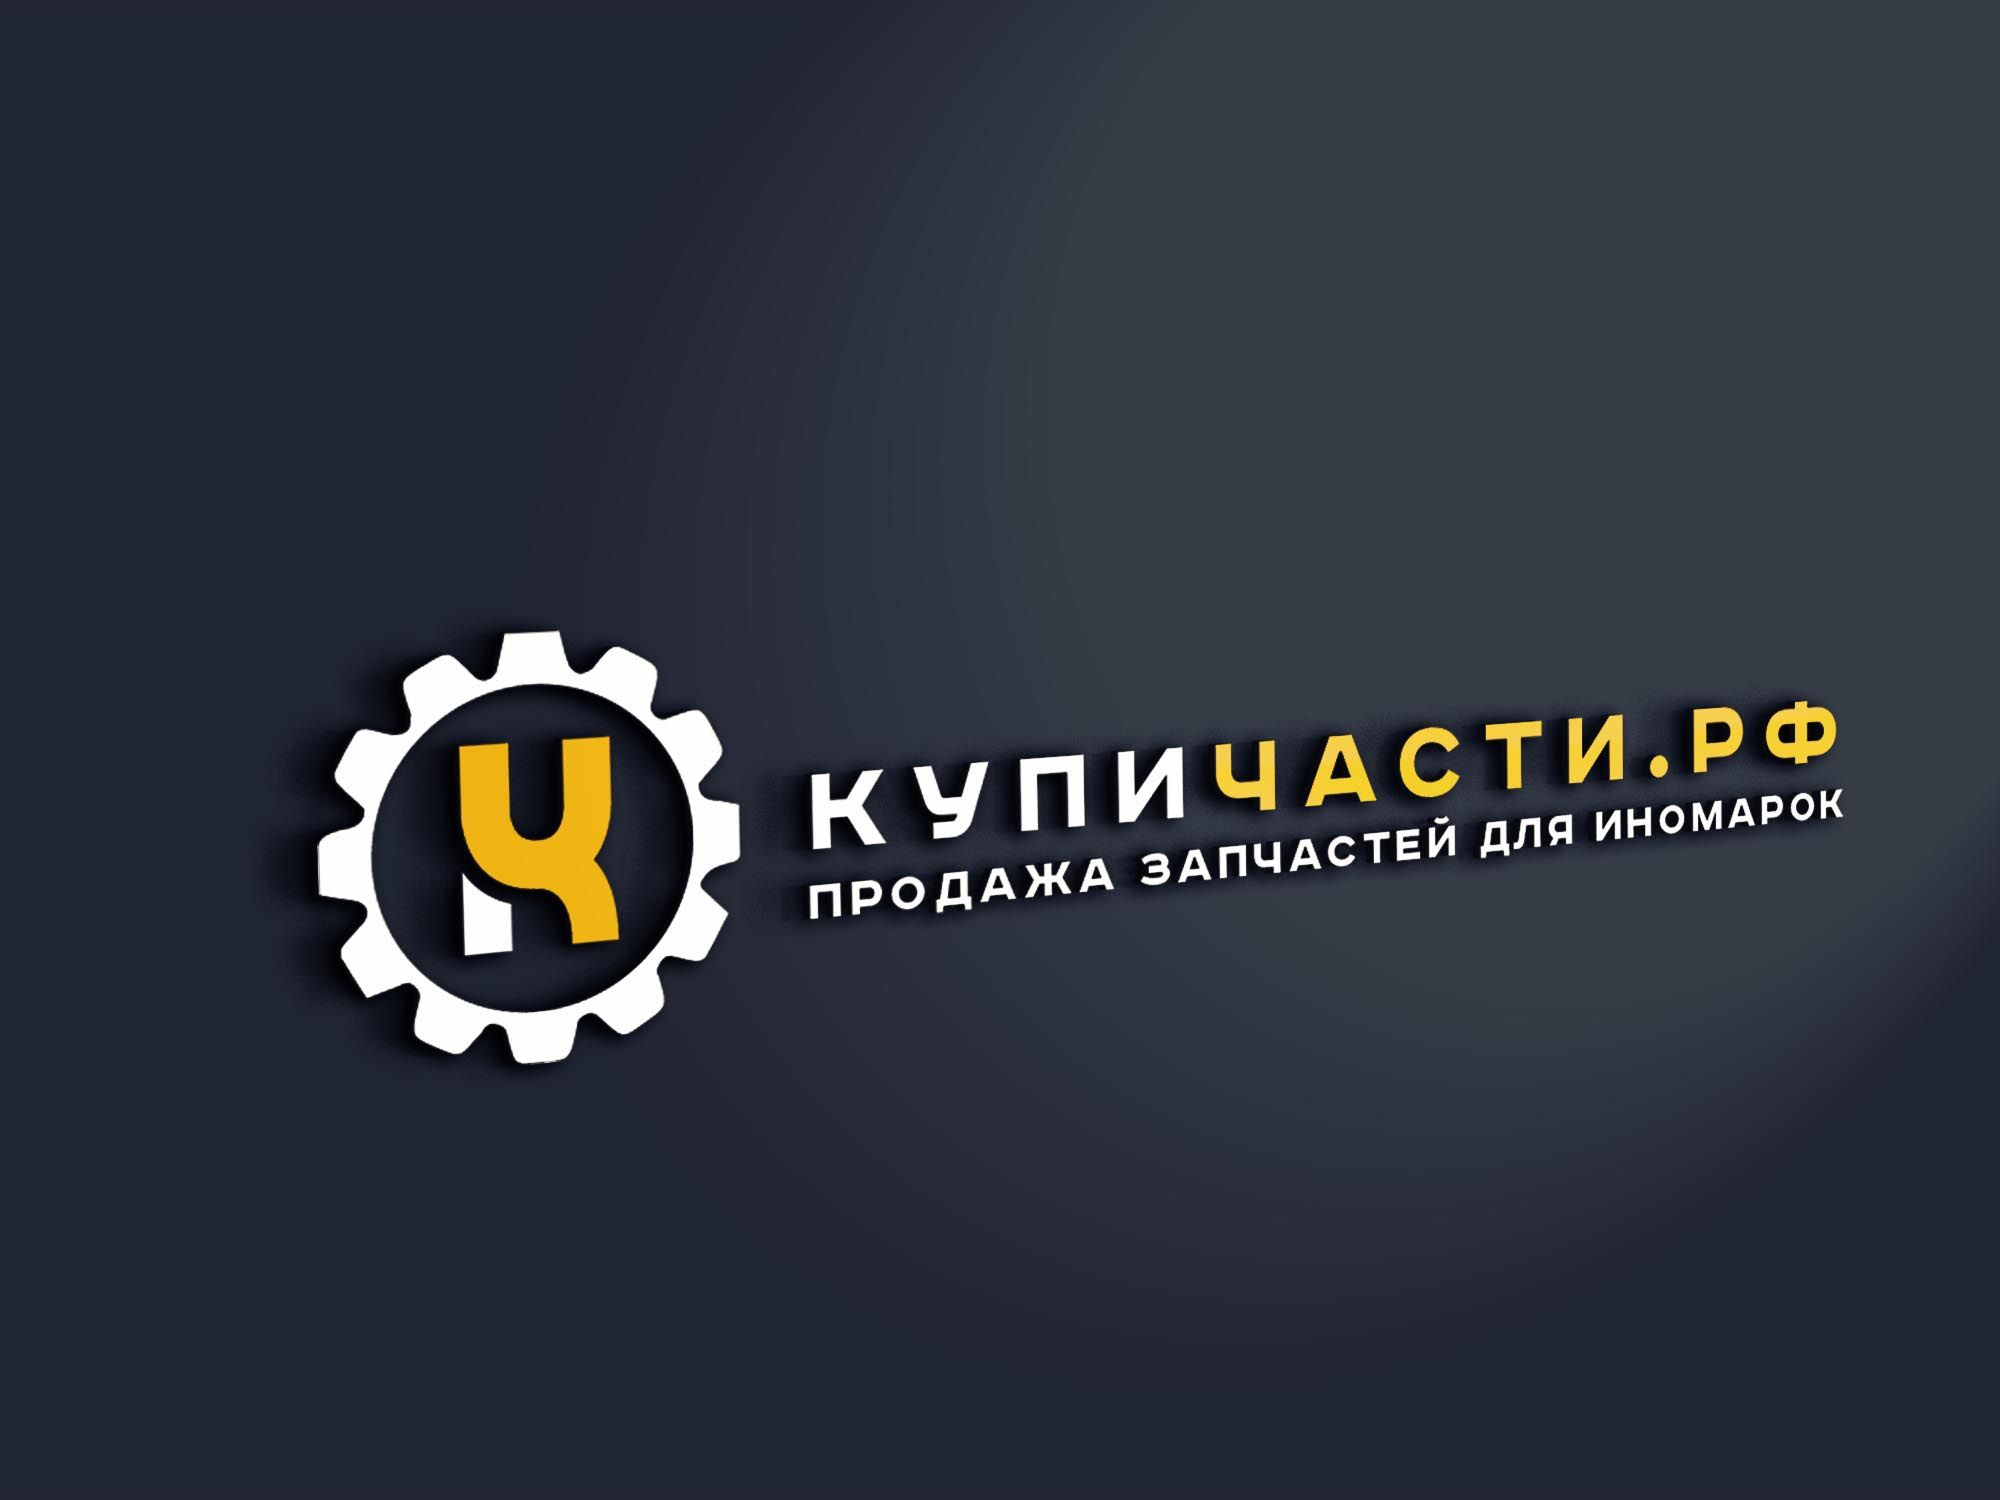 Логотип для купичасти.рф или КупиЧасти.рф или КУПИЧАСТИ.РФ - дизайнер SmolinDenis